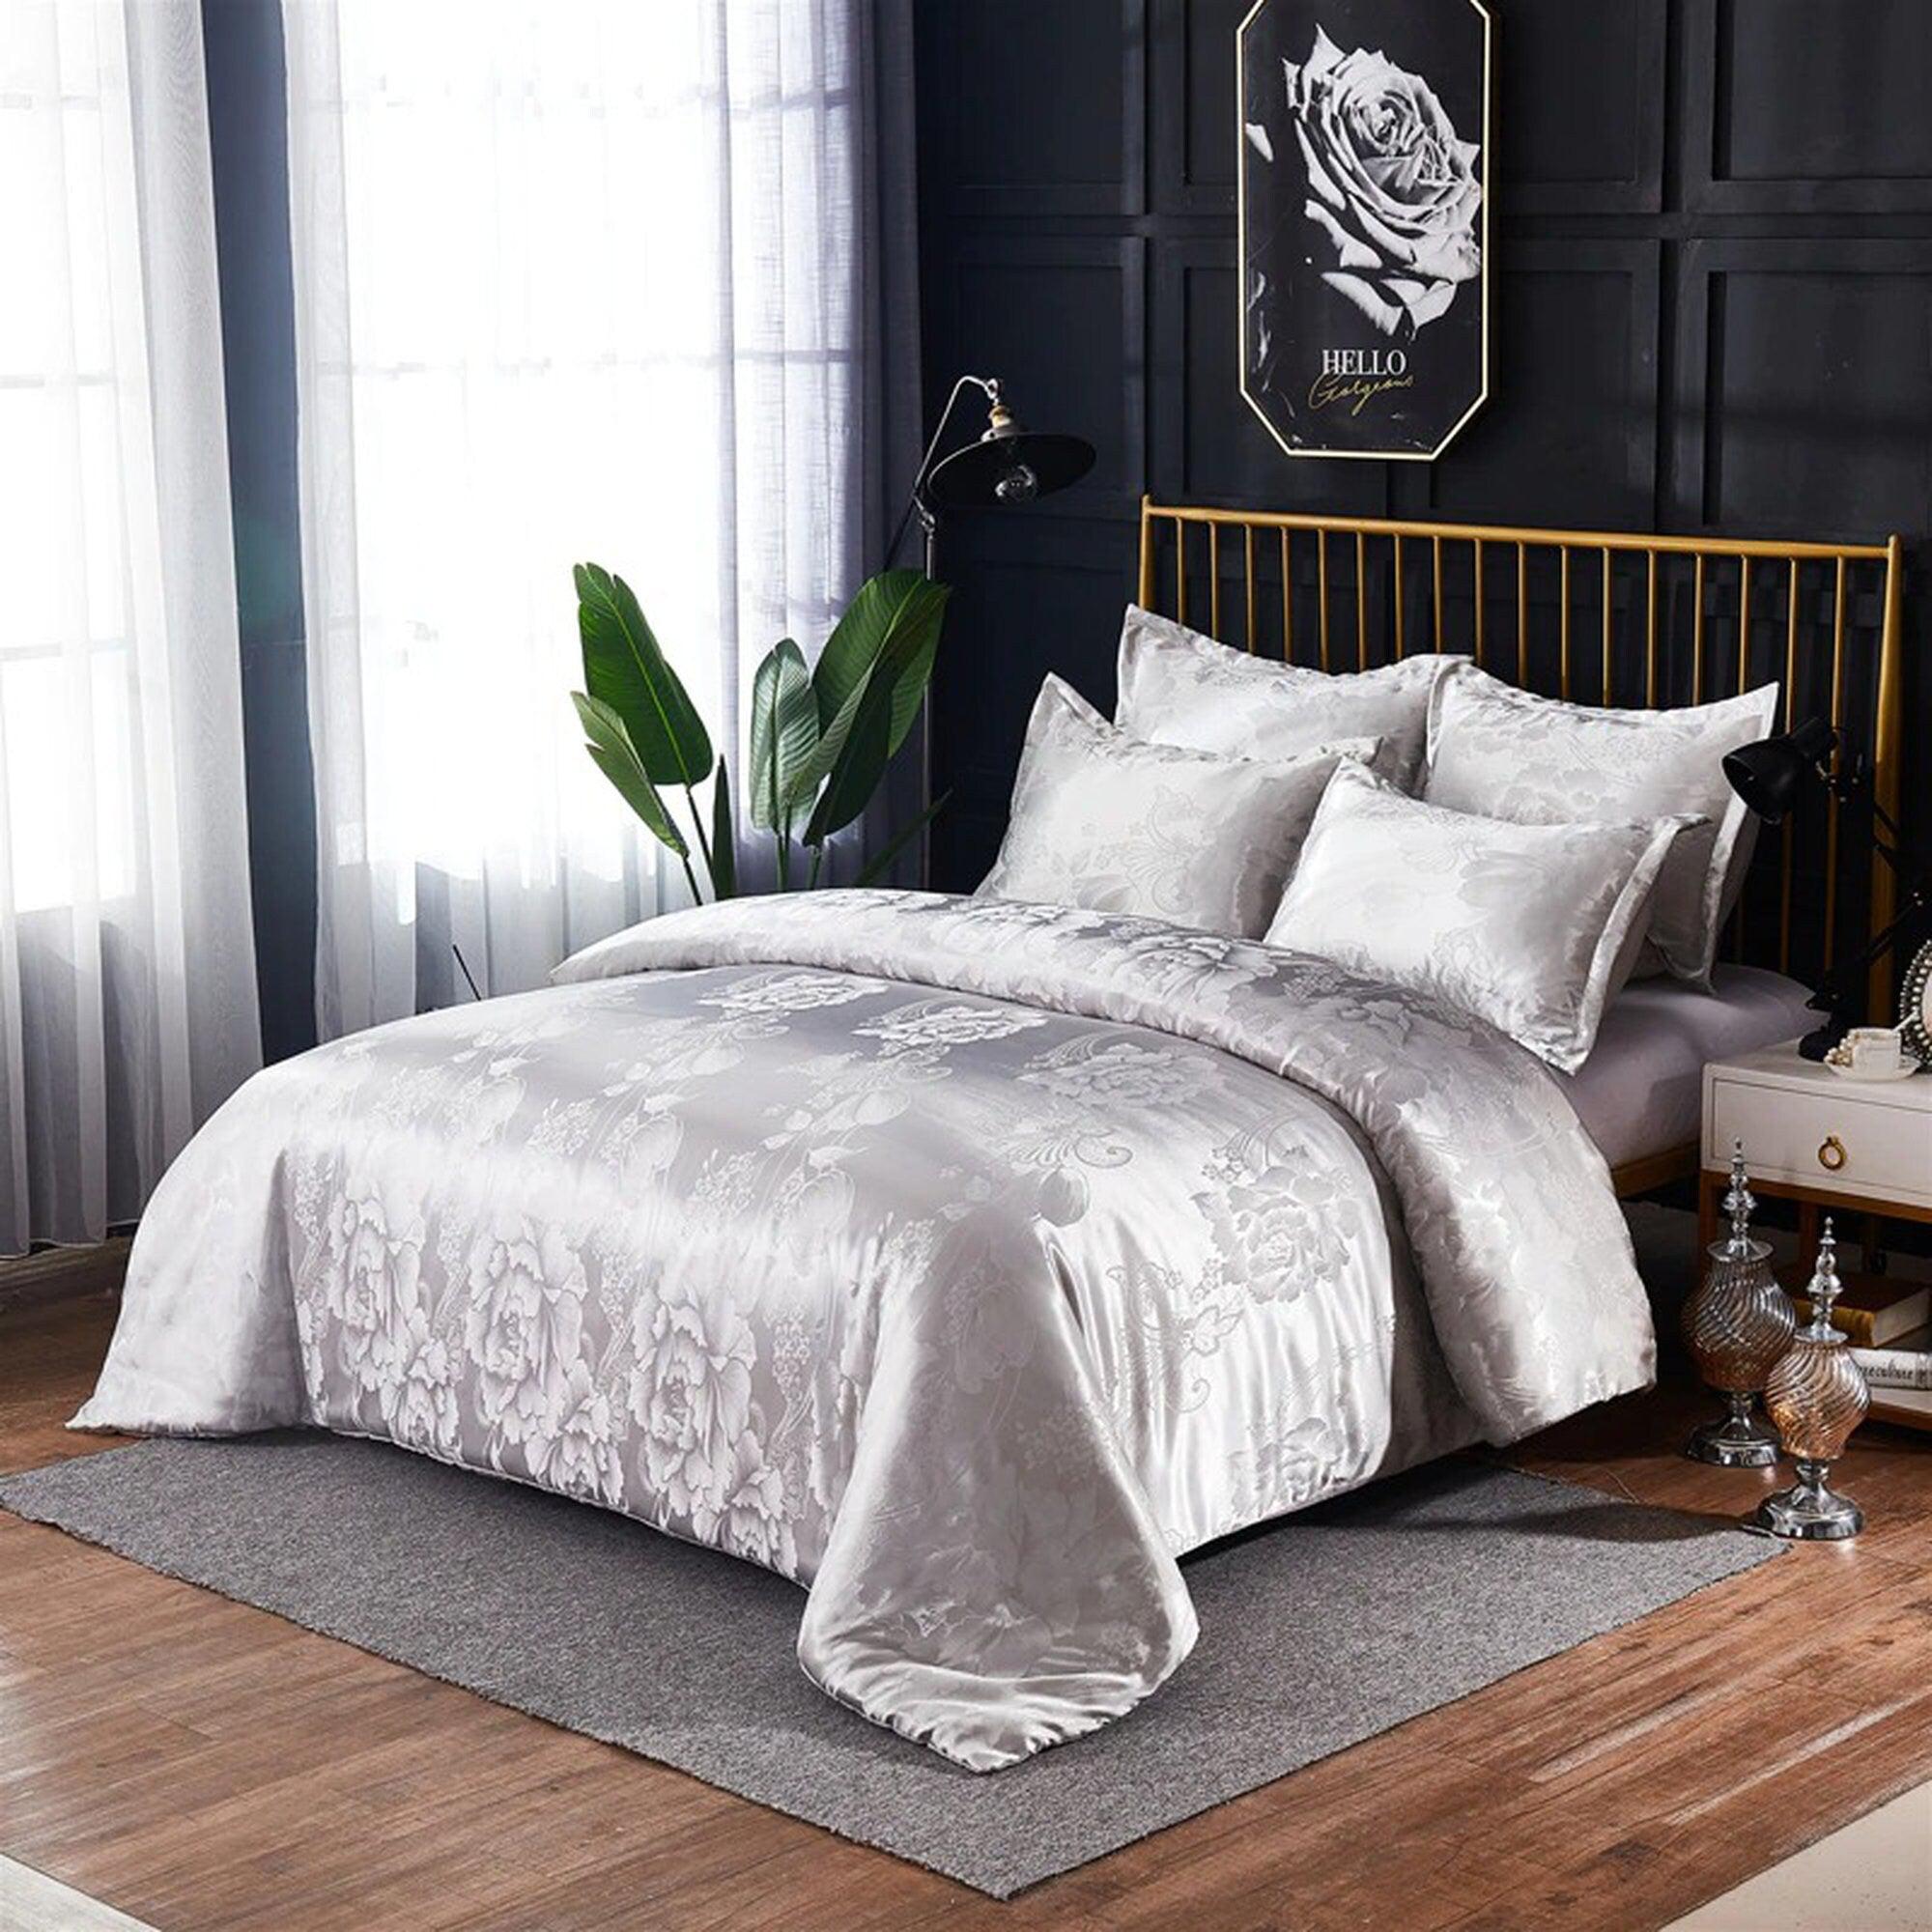 daintyduvet Luxury Bedding in White and Grey Silky Jacquard Fabric, Damask Duvet Cover Set, Designer Bedding, Aesthetic Duvet King Queen Full Twin